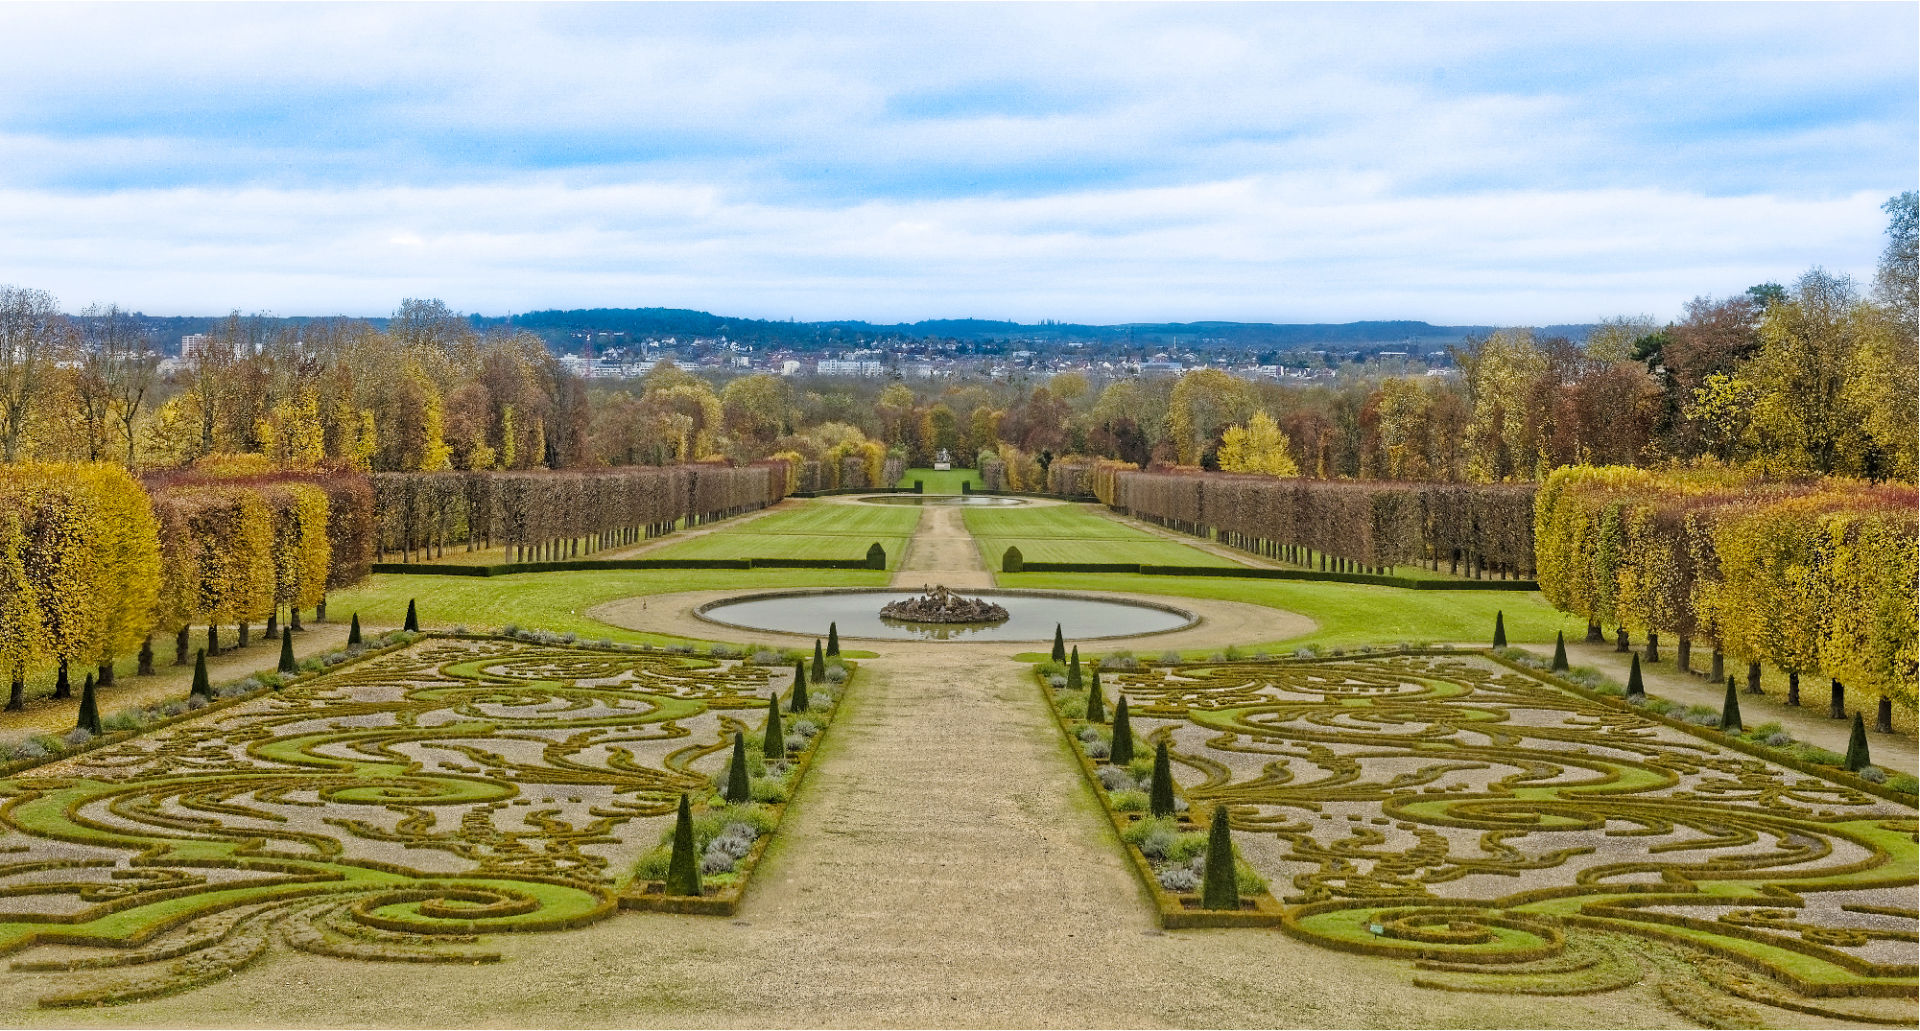 The gardens at the Château de Champs-sur-Marne